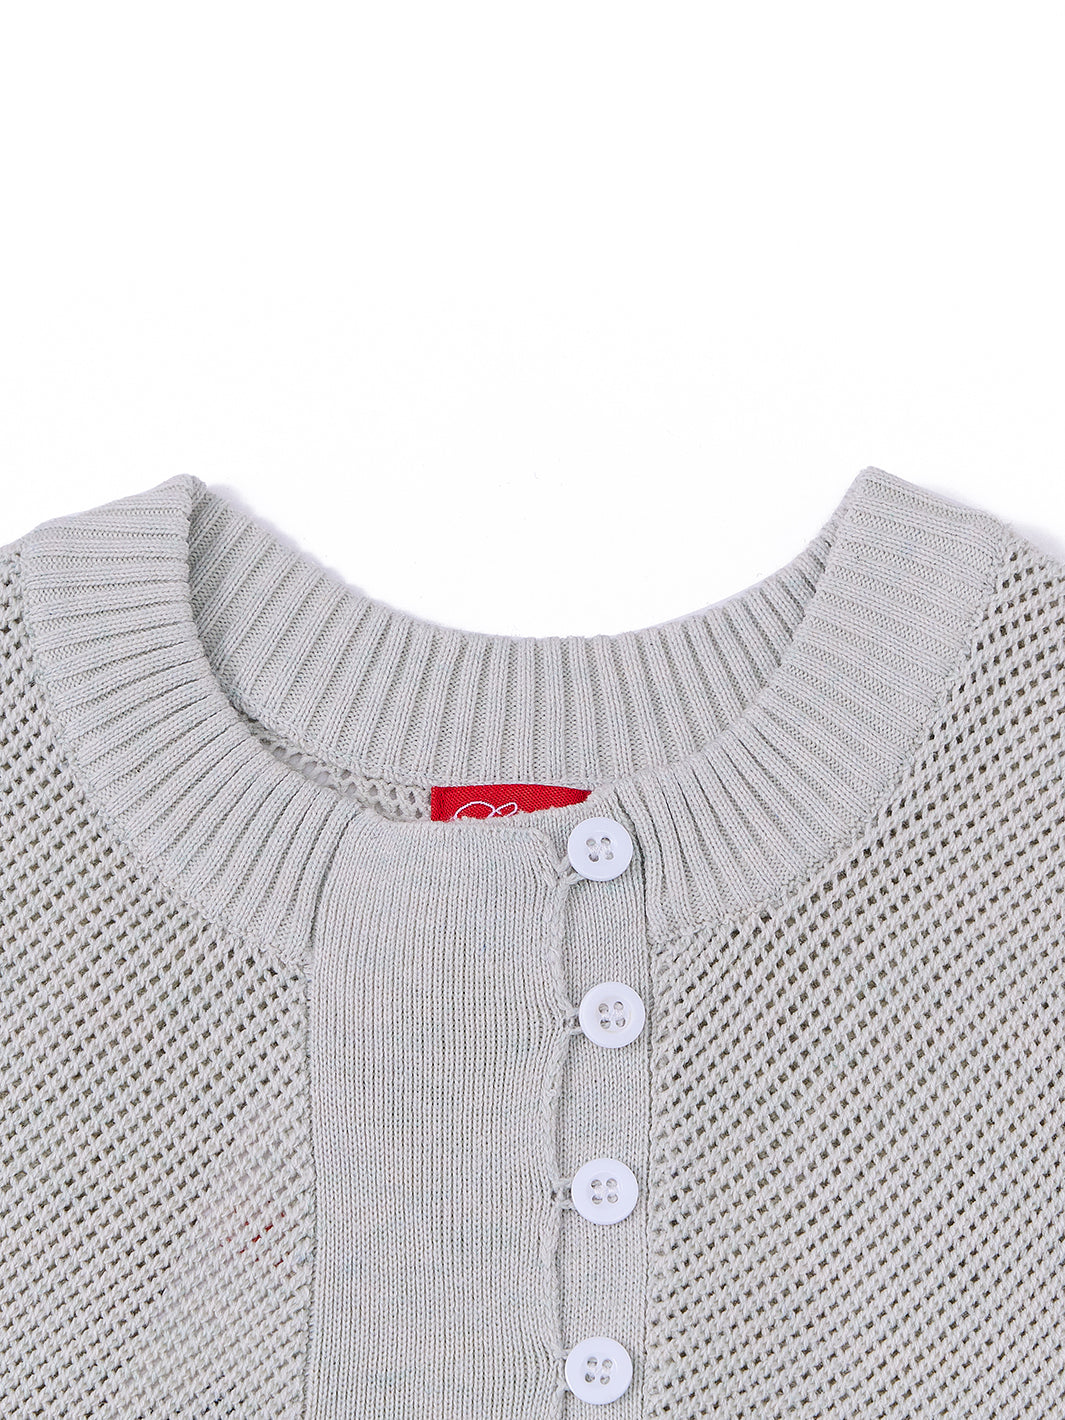 Front Button Short Sleeve Sweater - Lt. Mint Green Mix